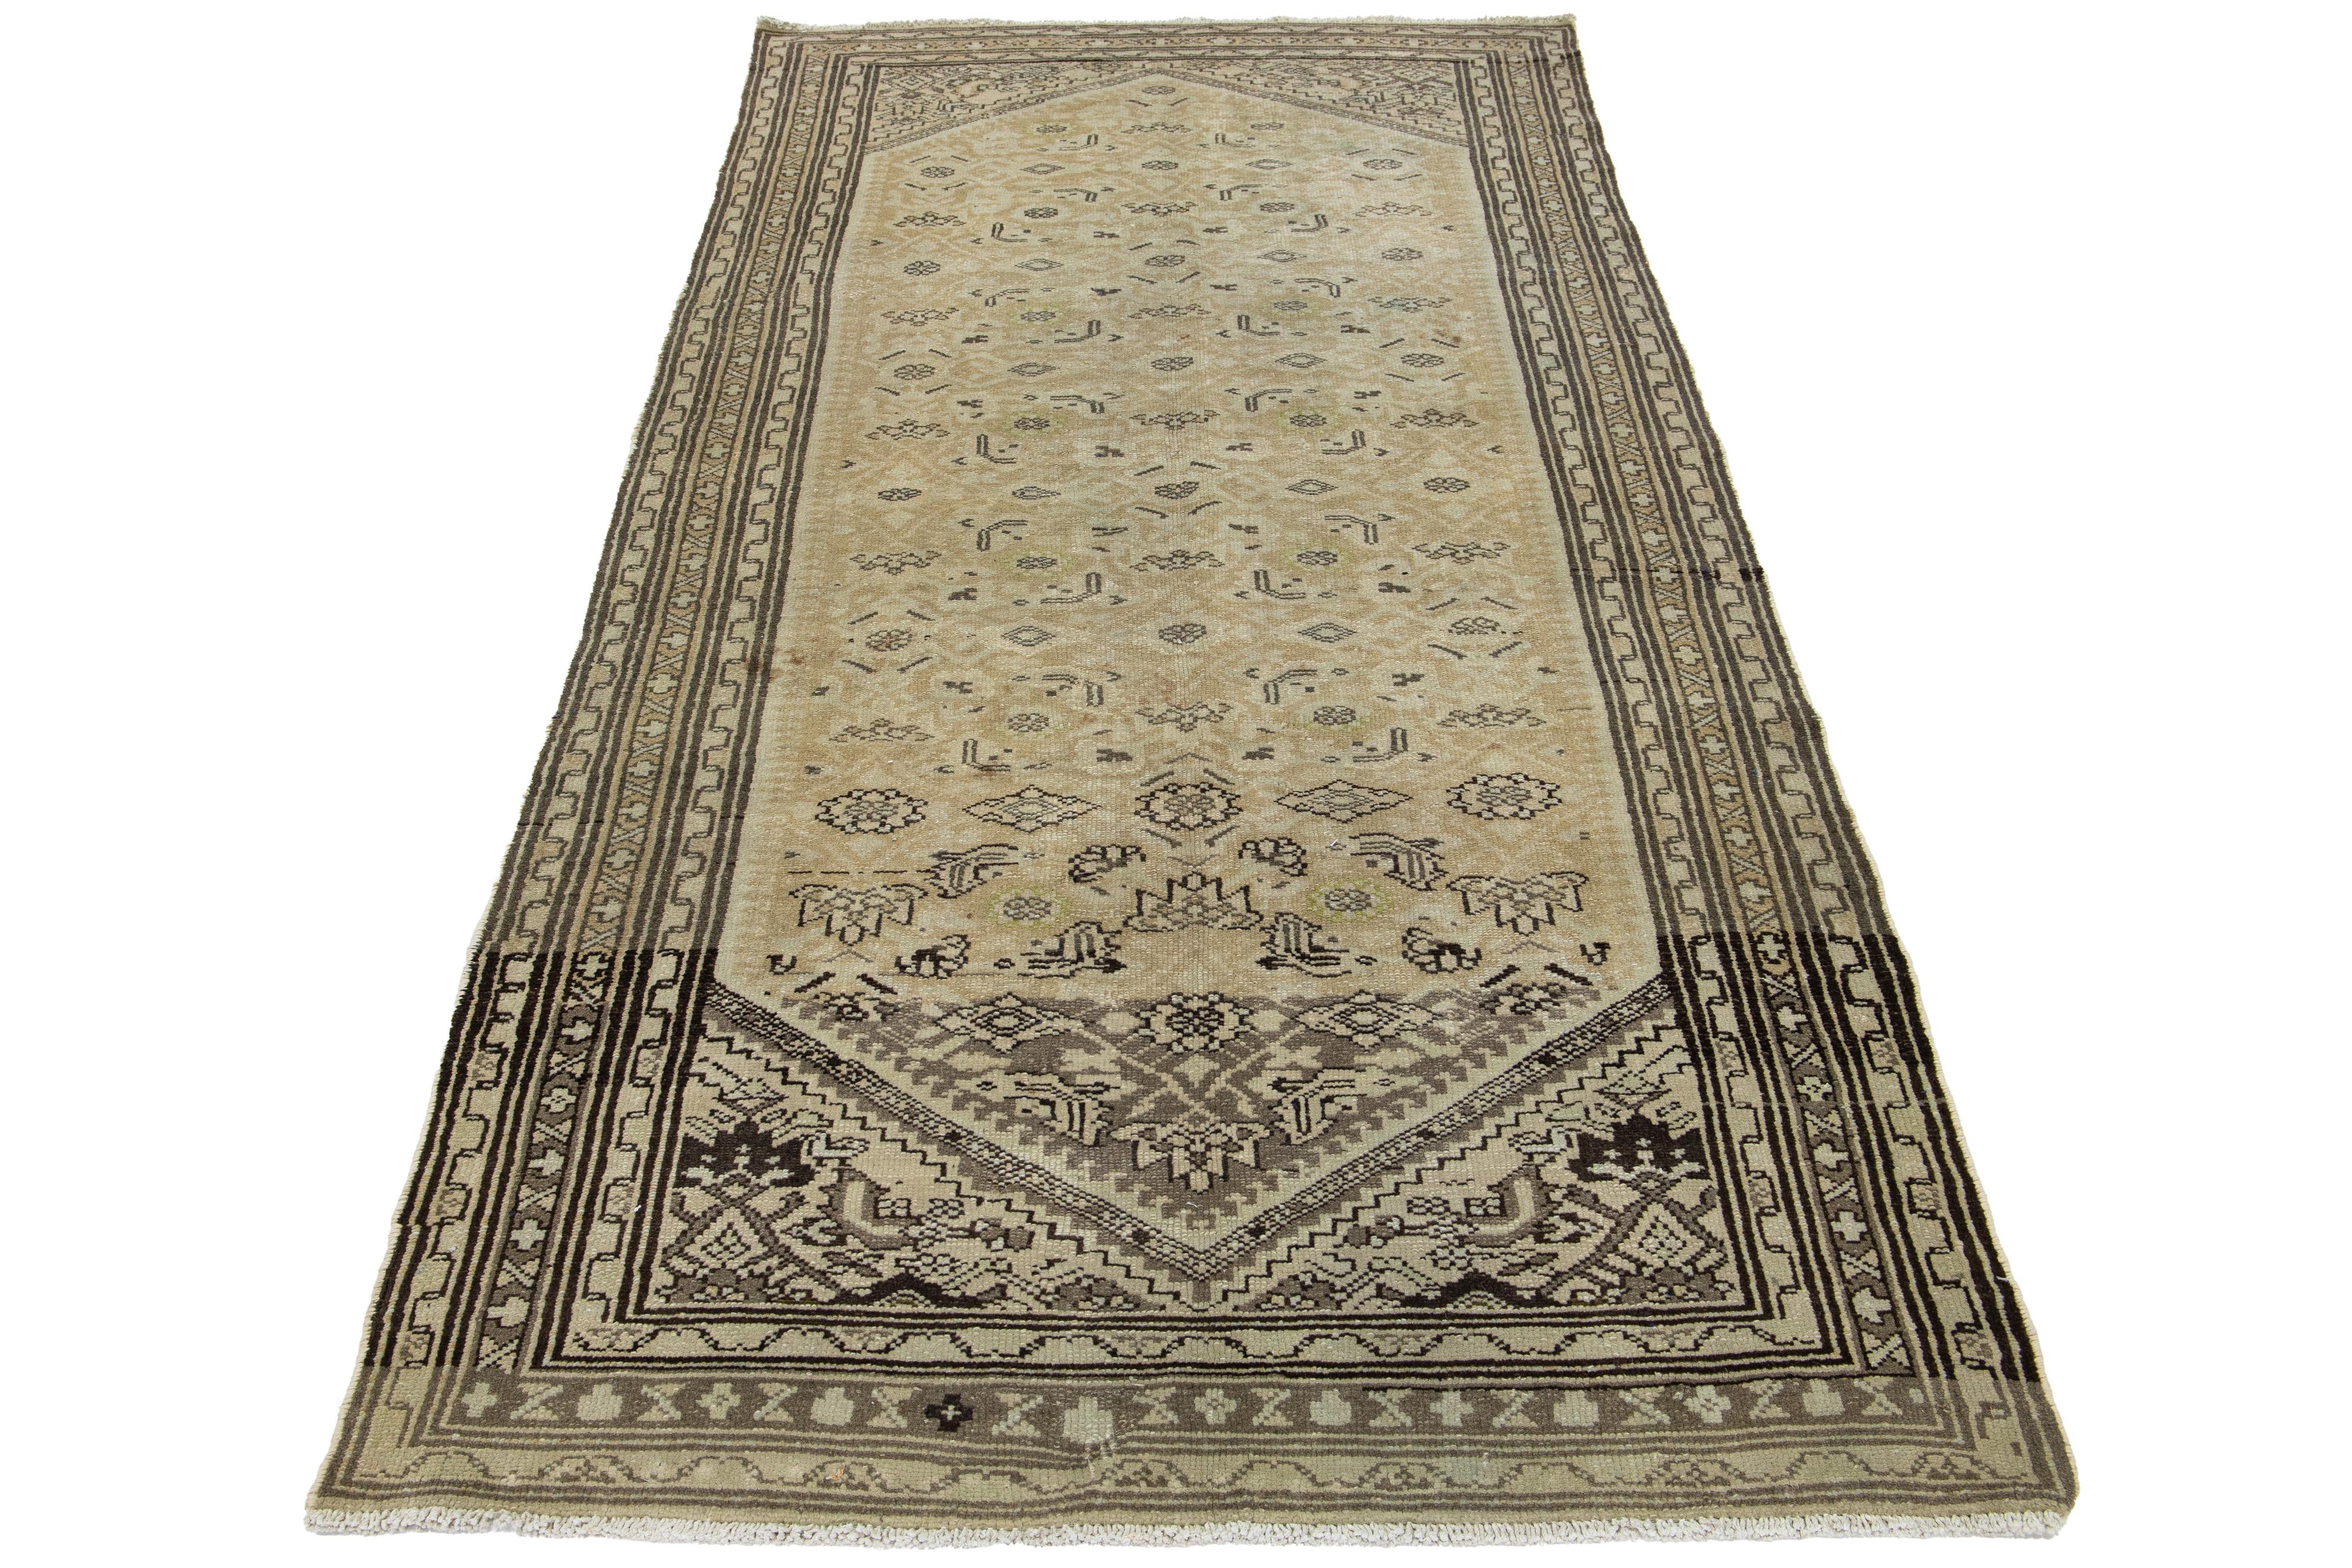 Il s'agit d'un tapis persan en laine de Malayer fait à la main au 20e siècle. Le fond est beige et les accents bruns, gris et verts sont tissés tout au long du motif.

Ce tapis mesure 4'8